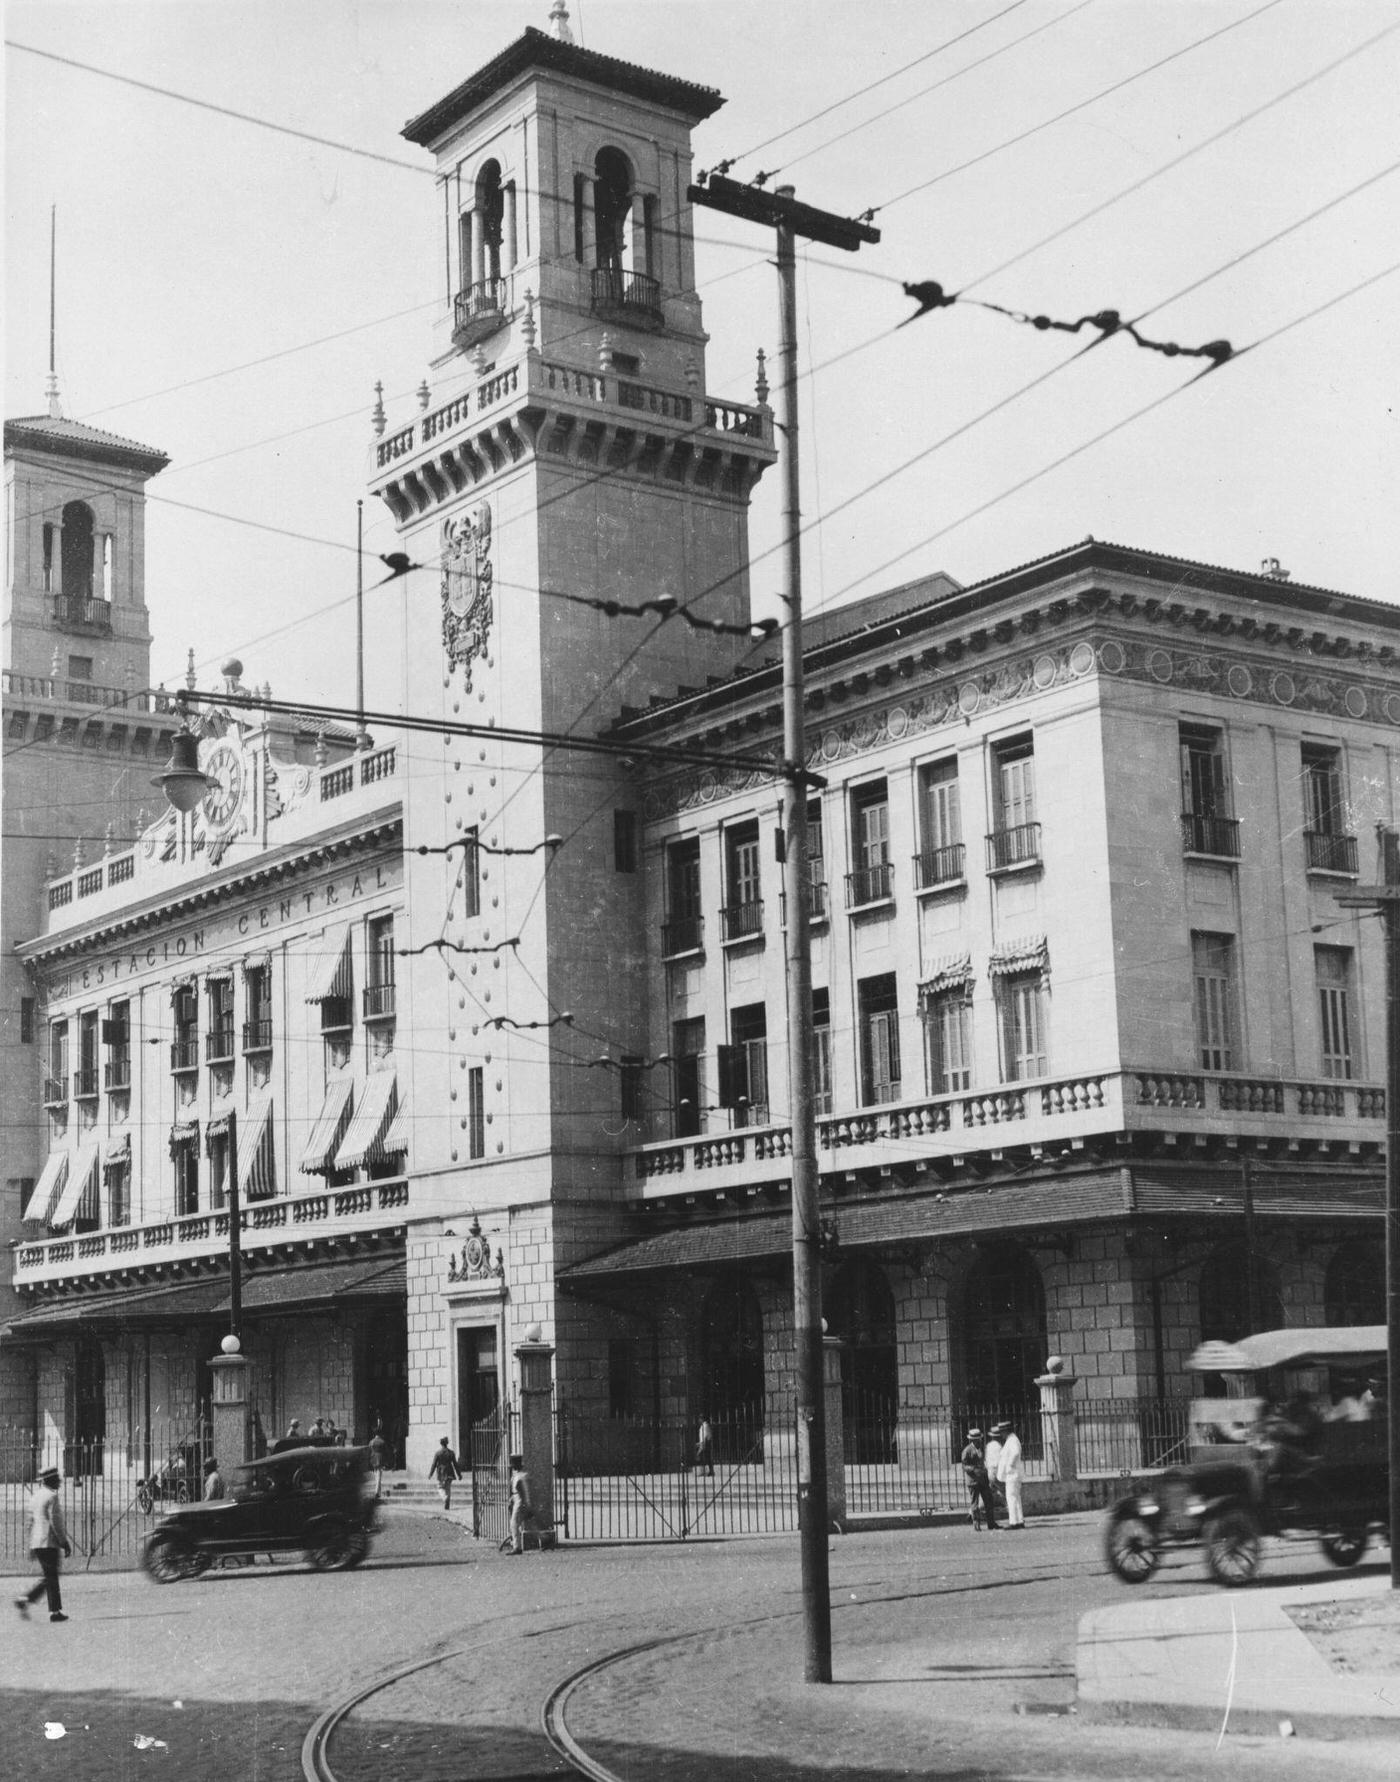 Central Station in Havana, 1930